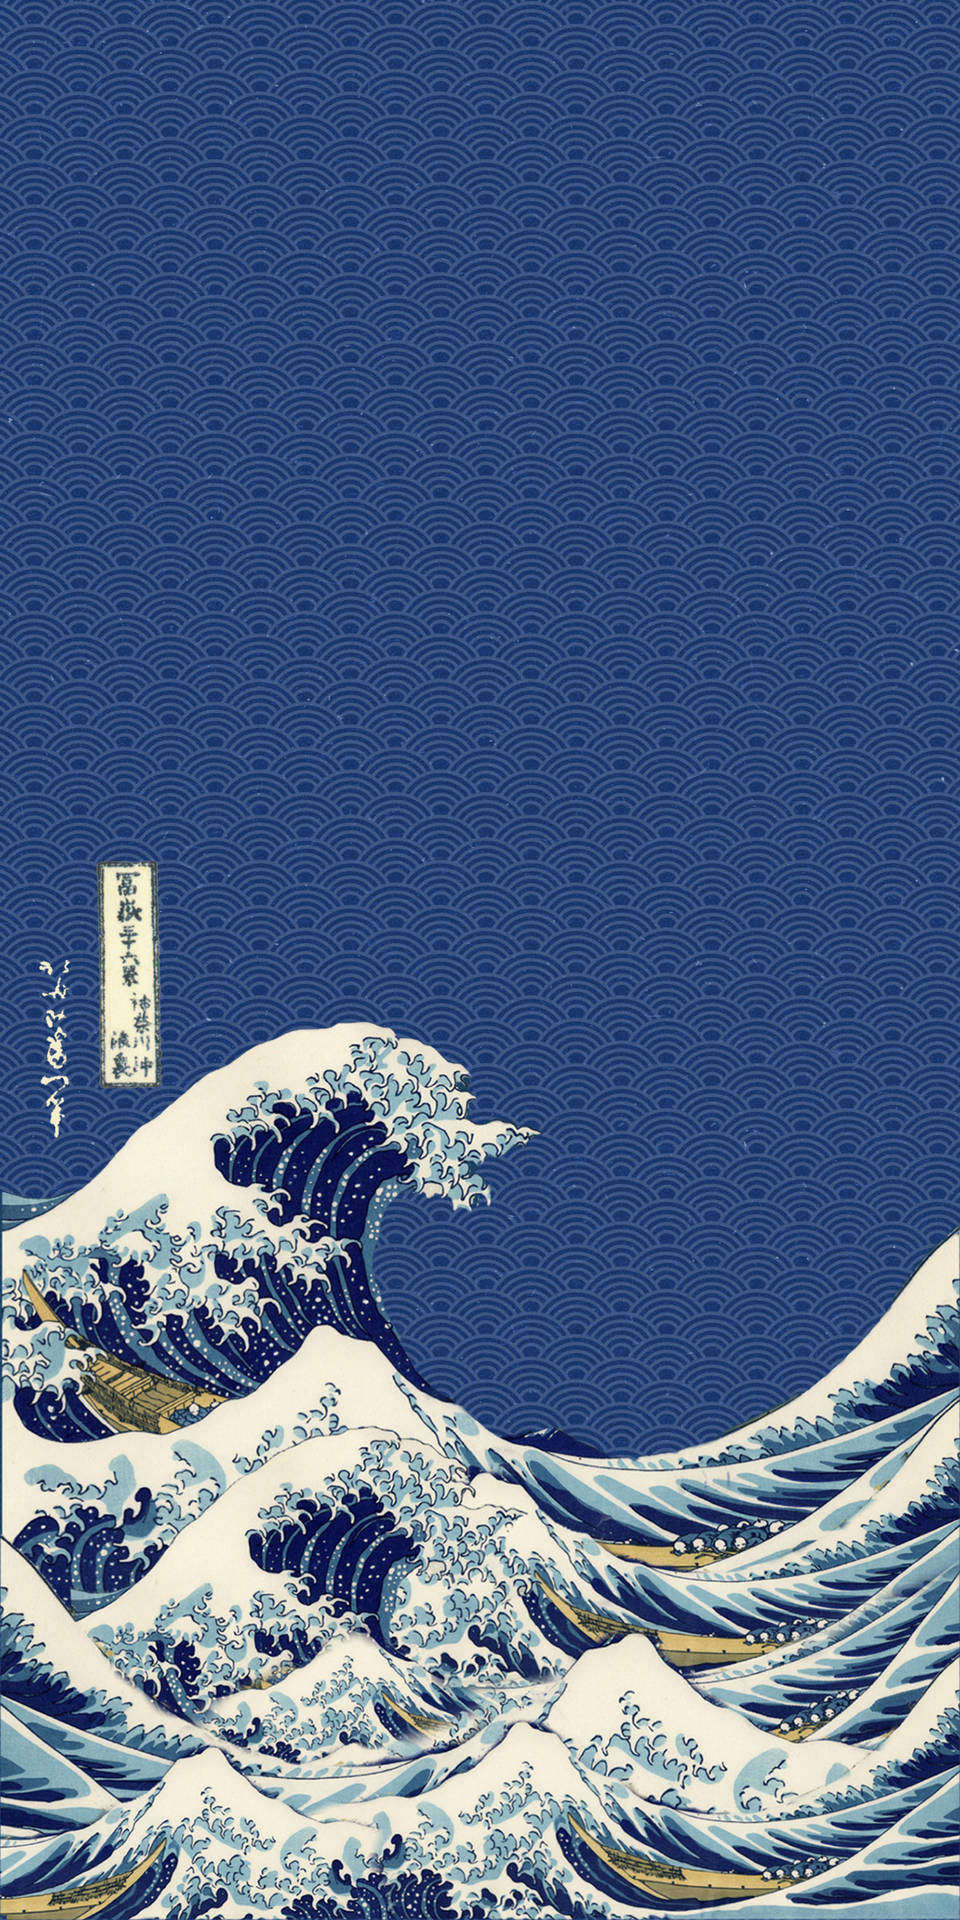 Stylish Japanese Waves Background